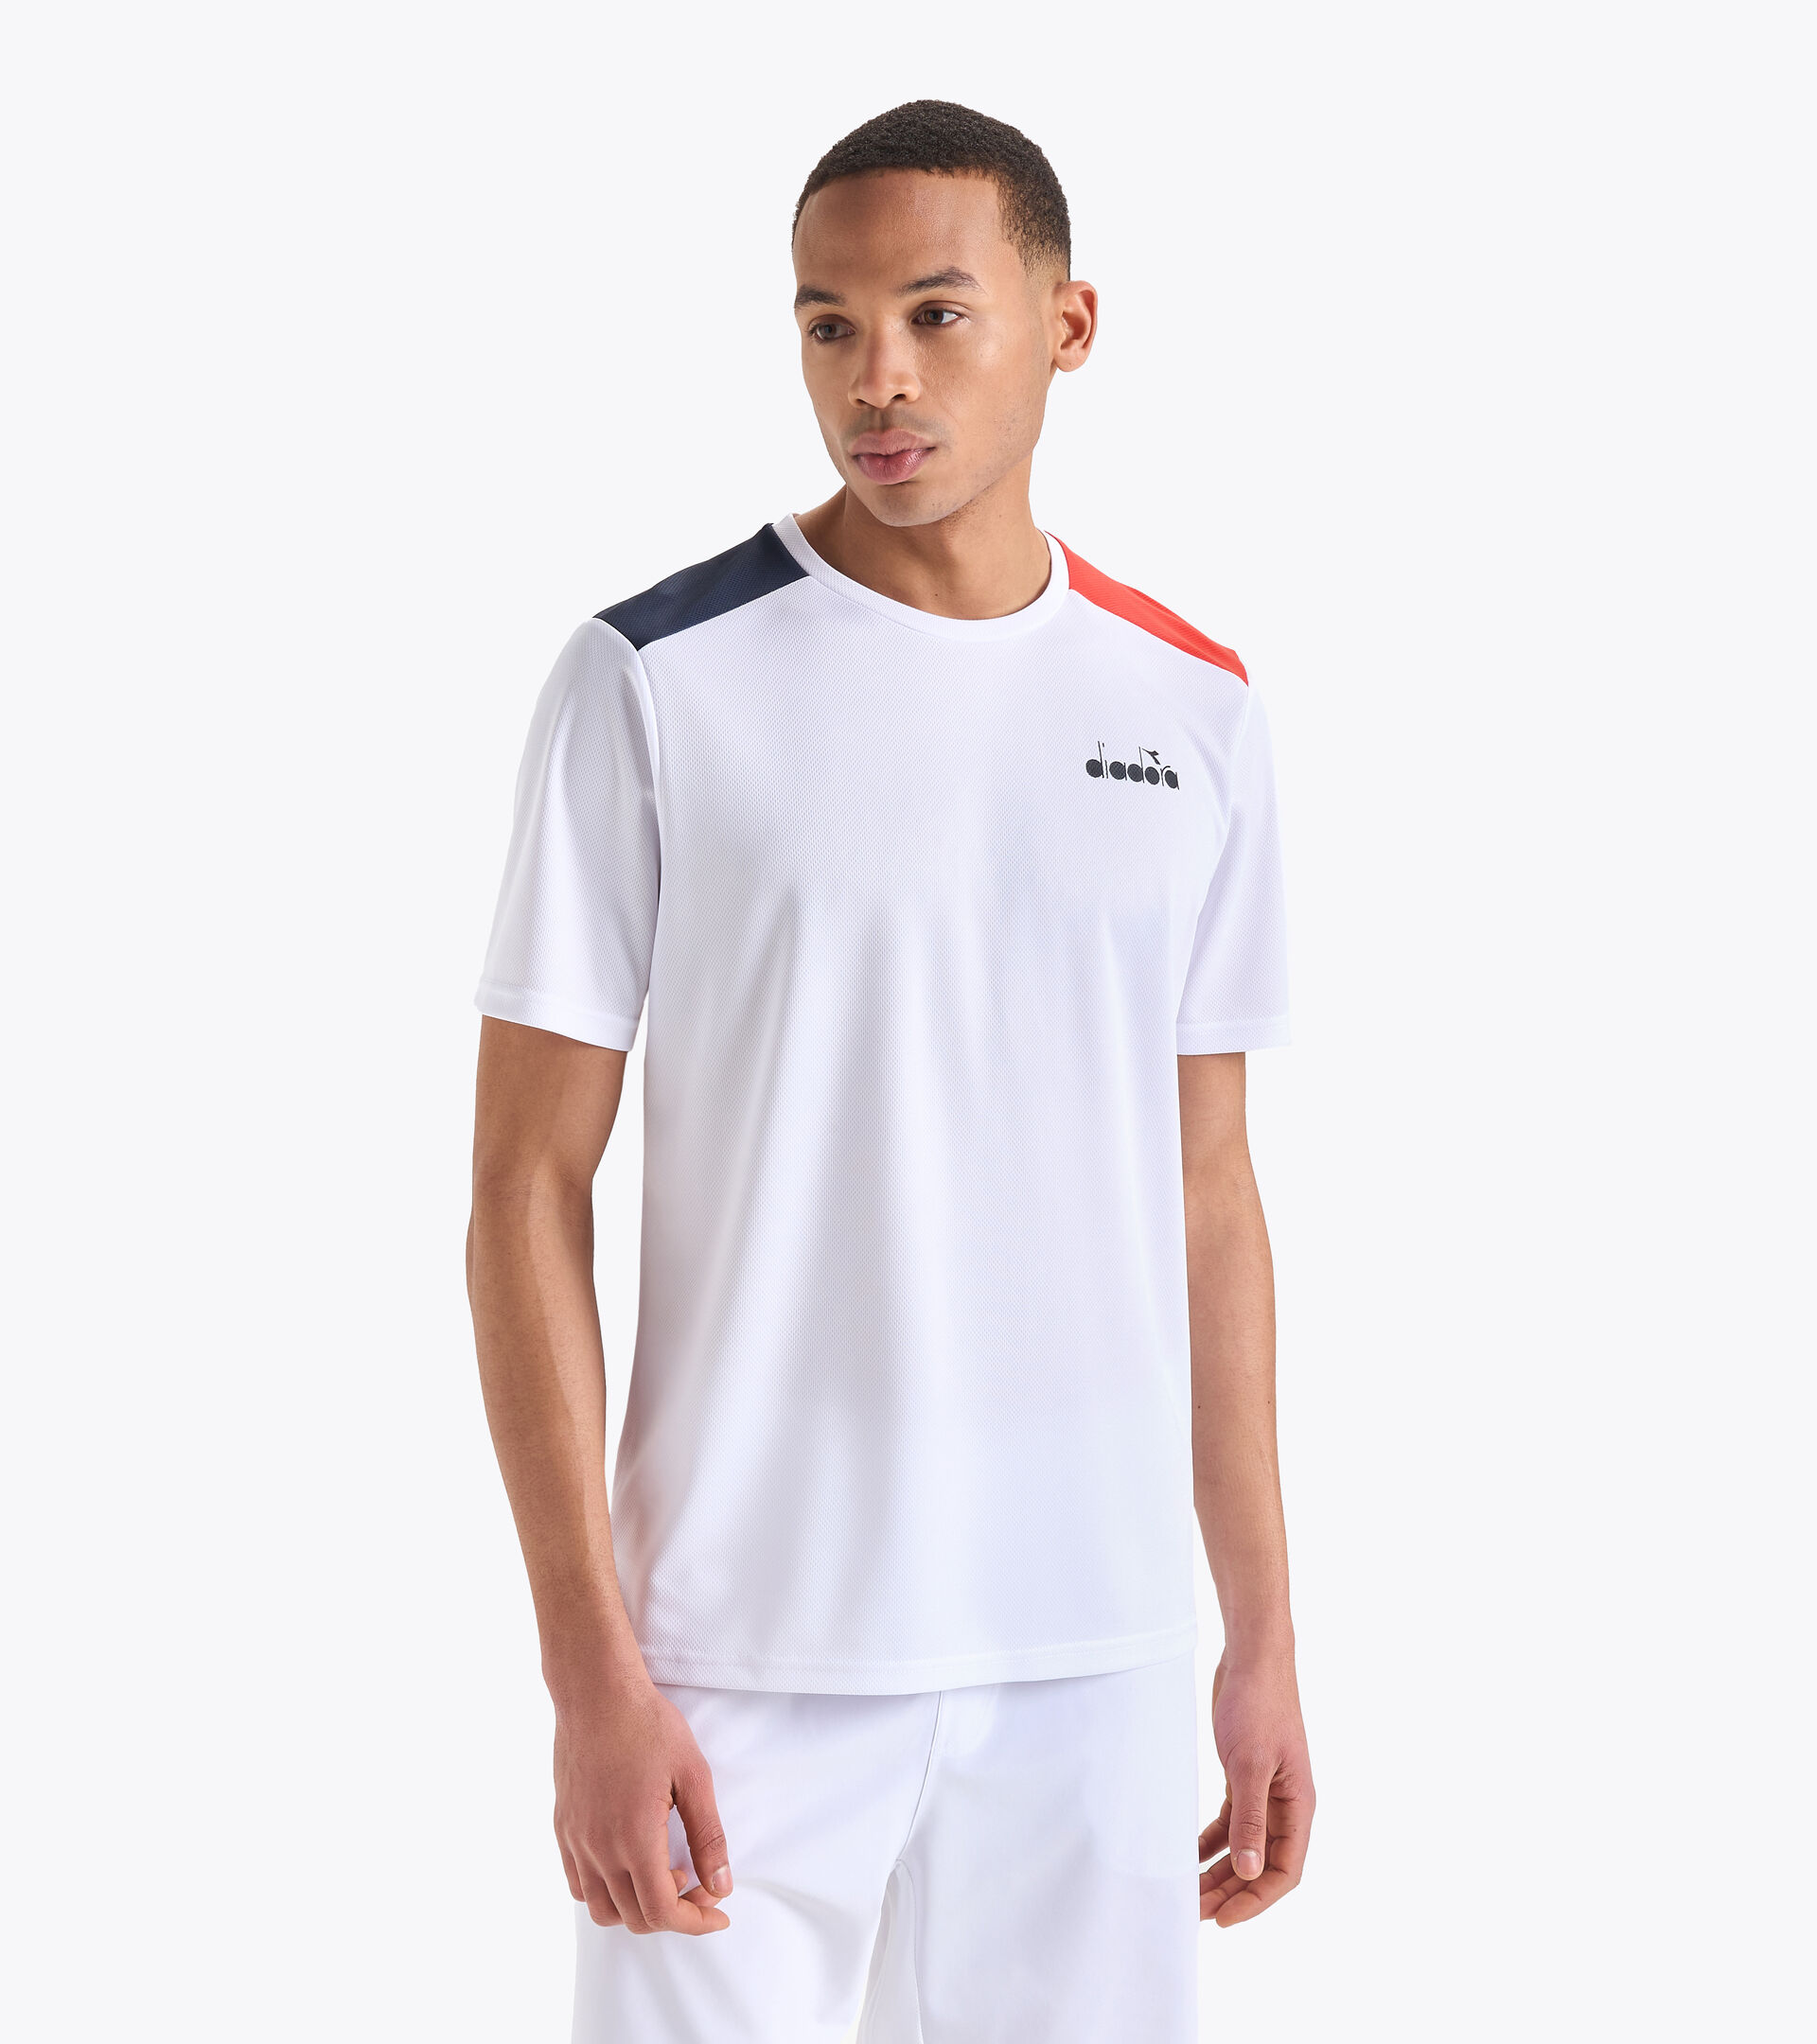 SS CORE T-SHIRT - T Store Online - Diadora shirt Tennis Men